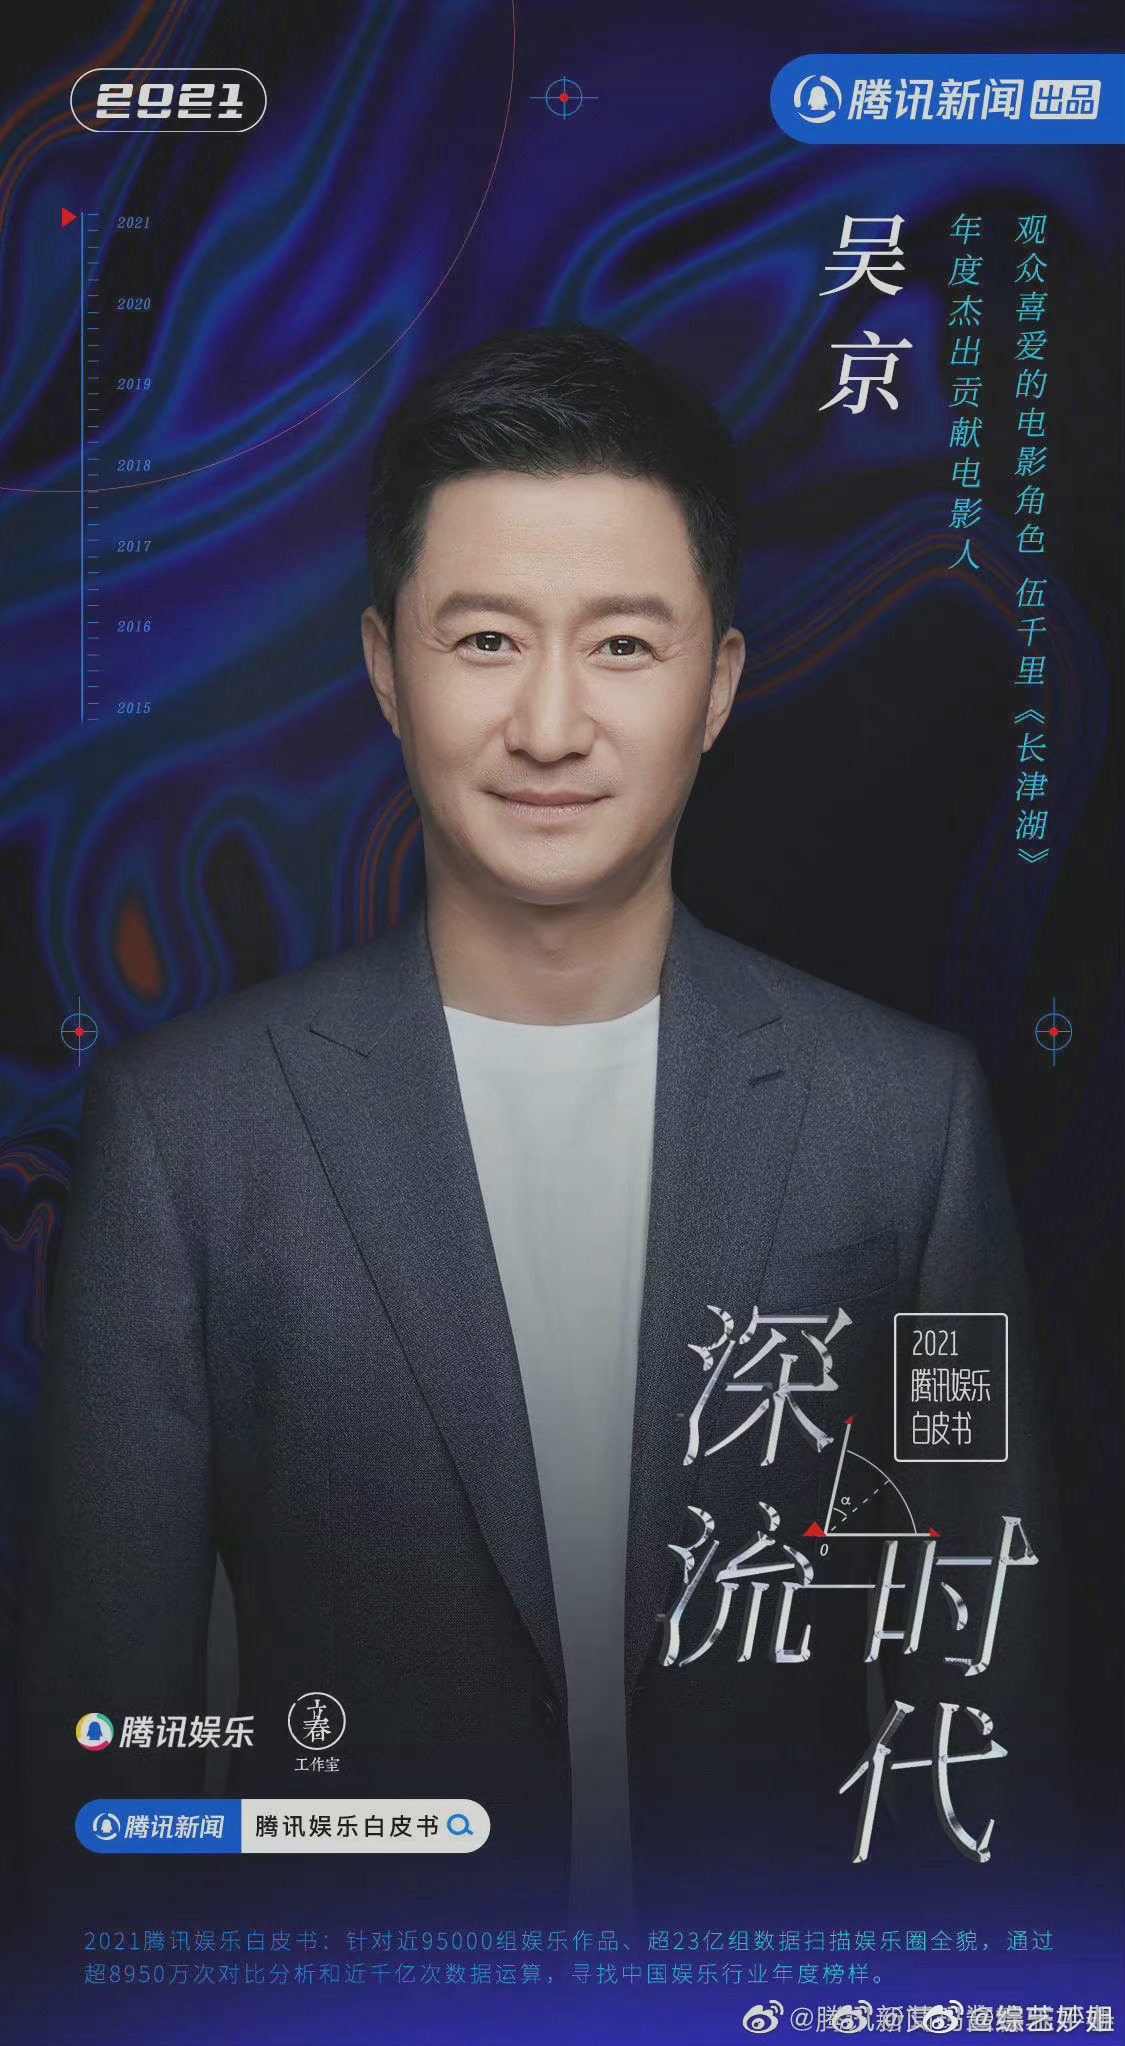 2021腾讯娱乐白皮书表彰海报 吴京 贾玲 周迅 易烊千玺 朱一龙……